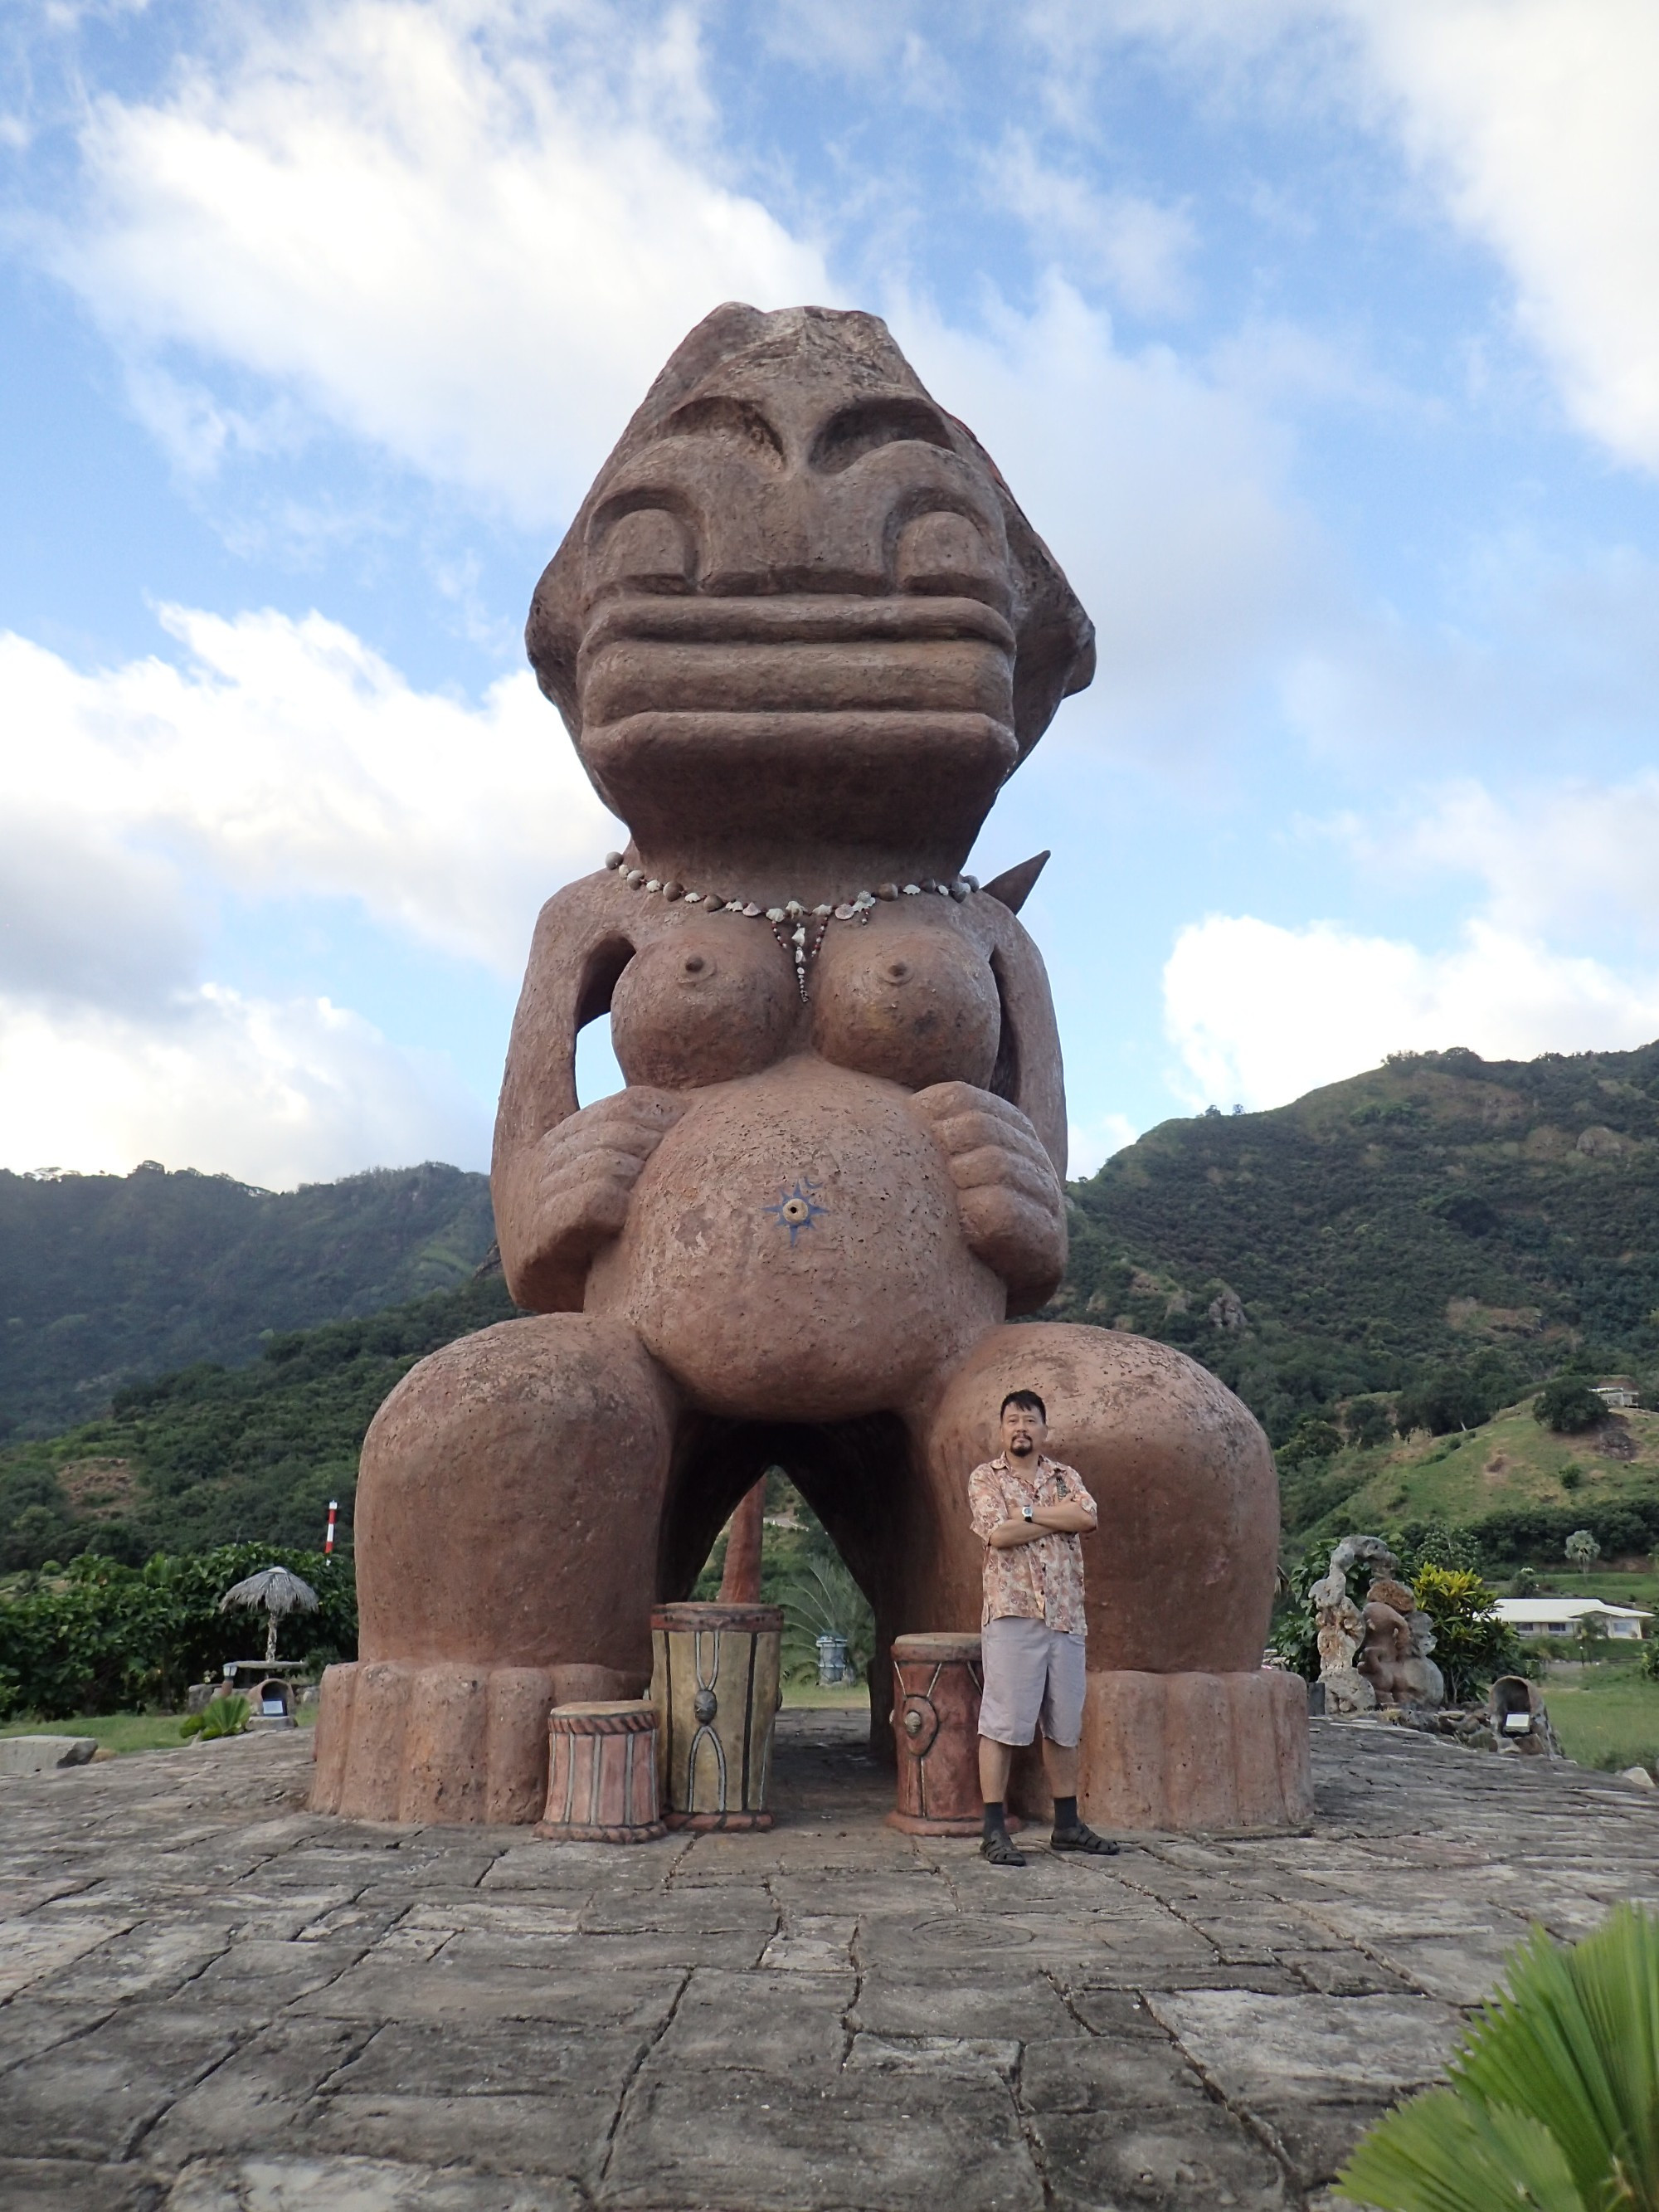 Tiki Tuhiva Giant Statue, Французская Полинезия